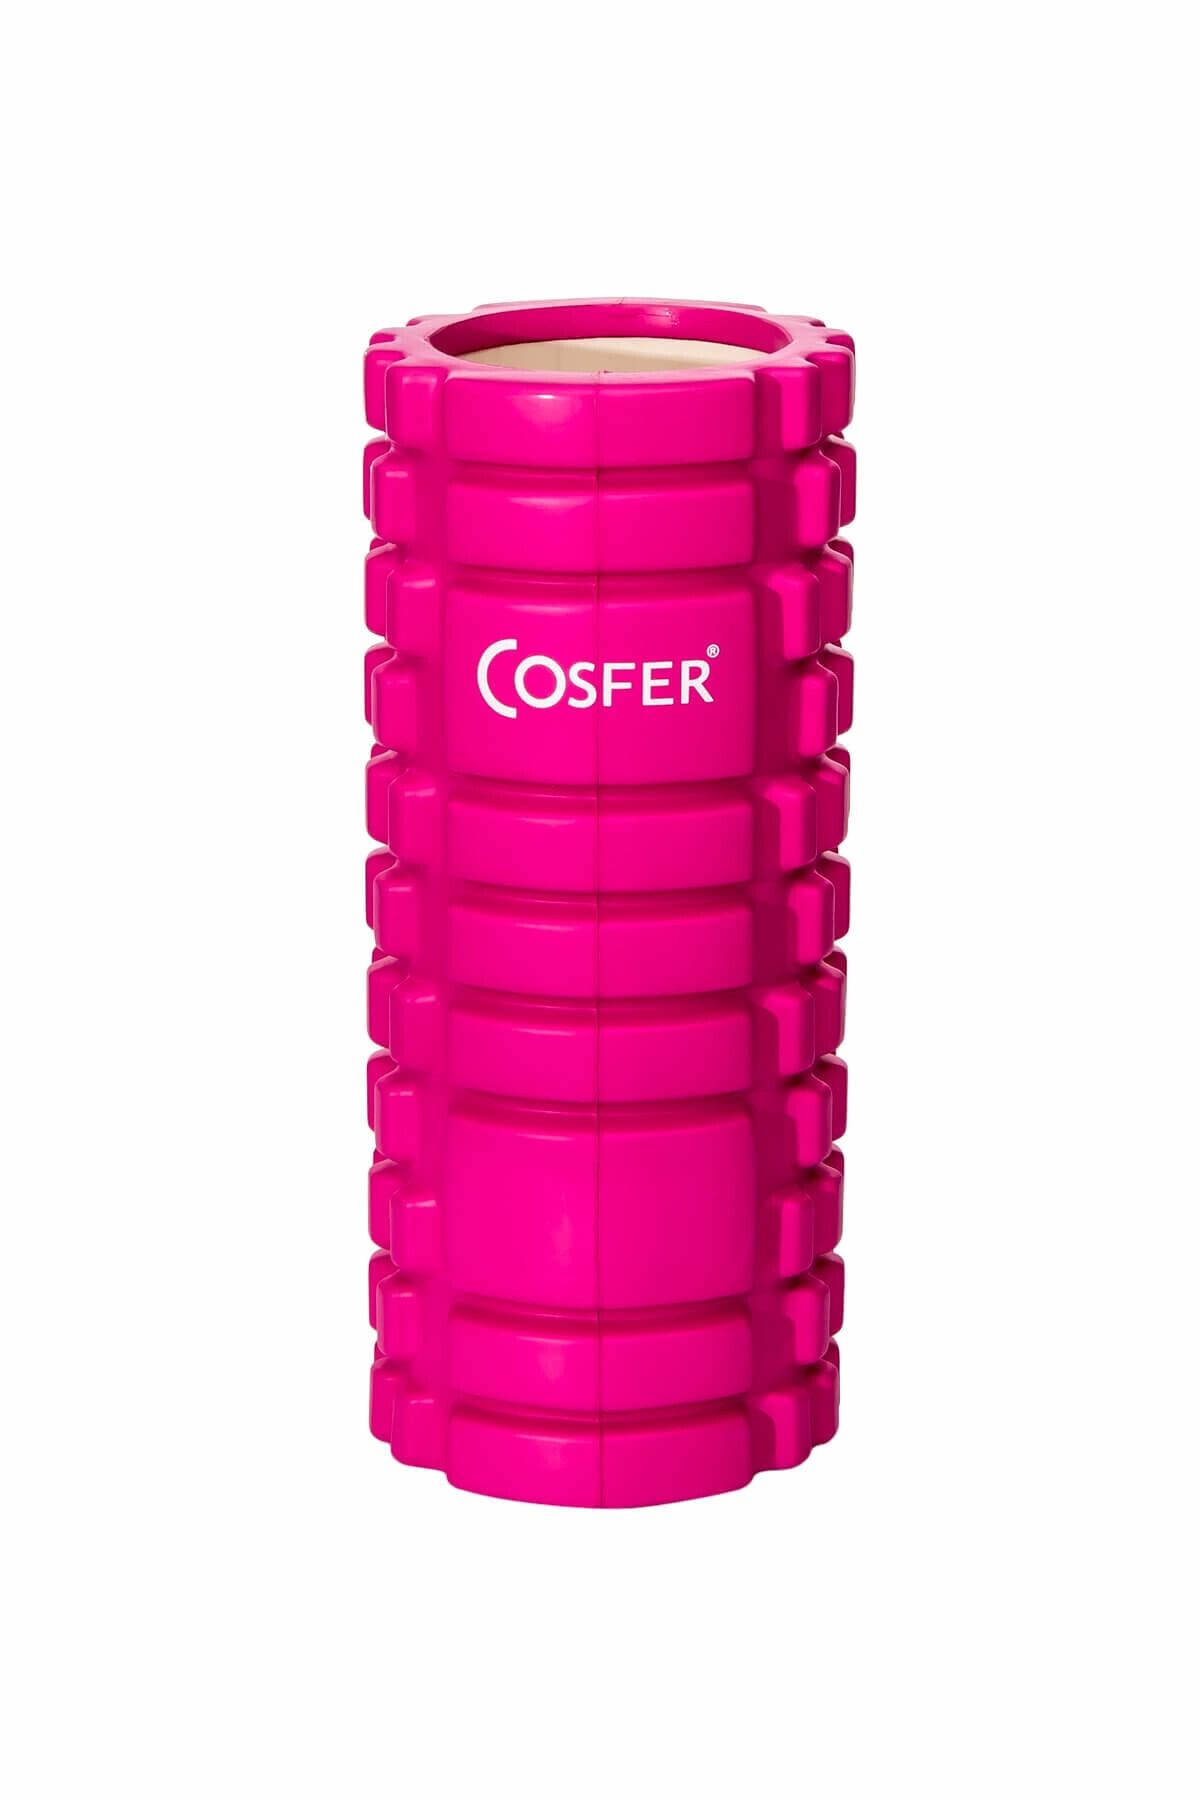 Cosfer Csf-56p Hollow Foam Roller - Pembe